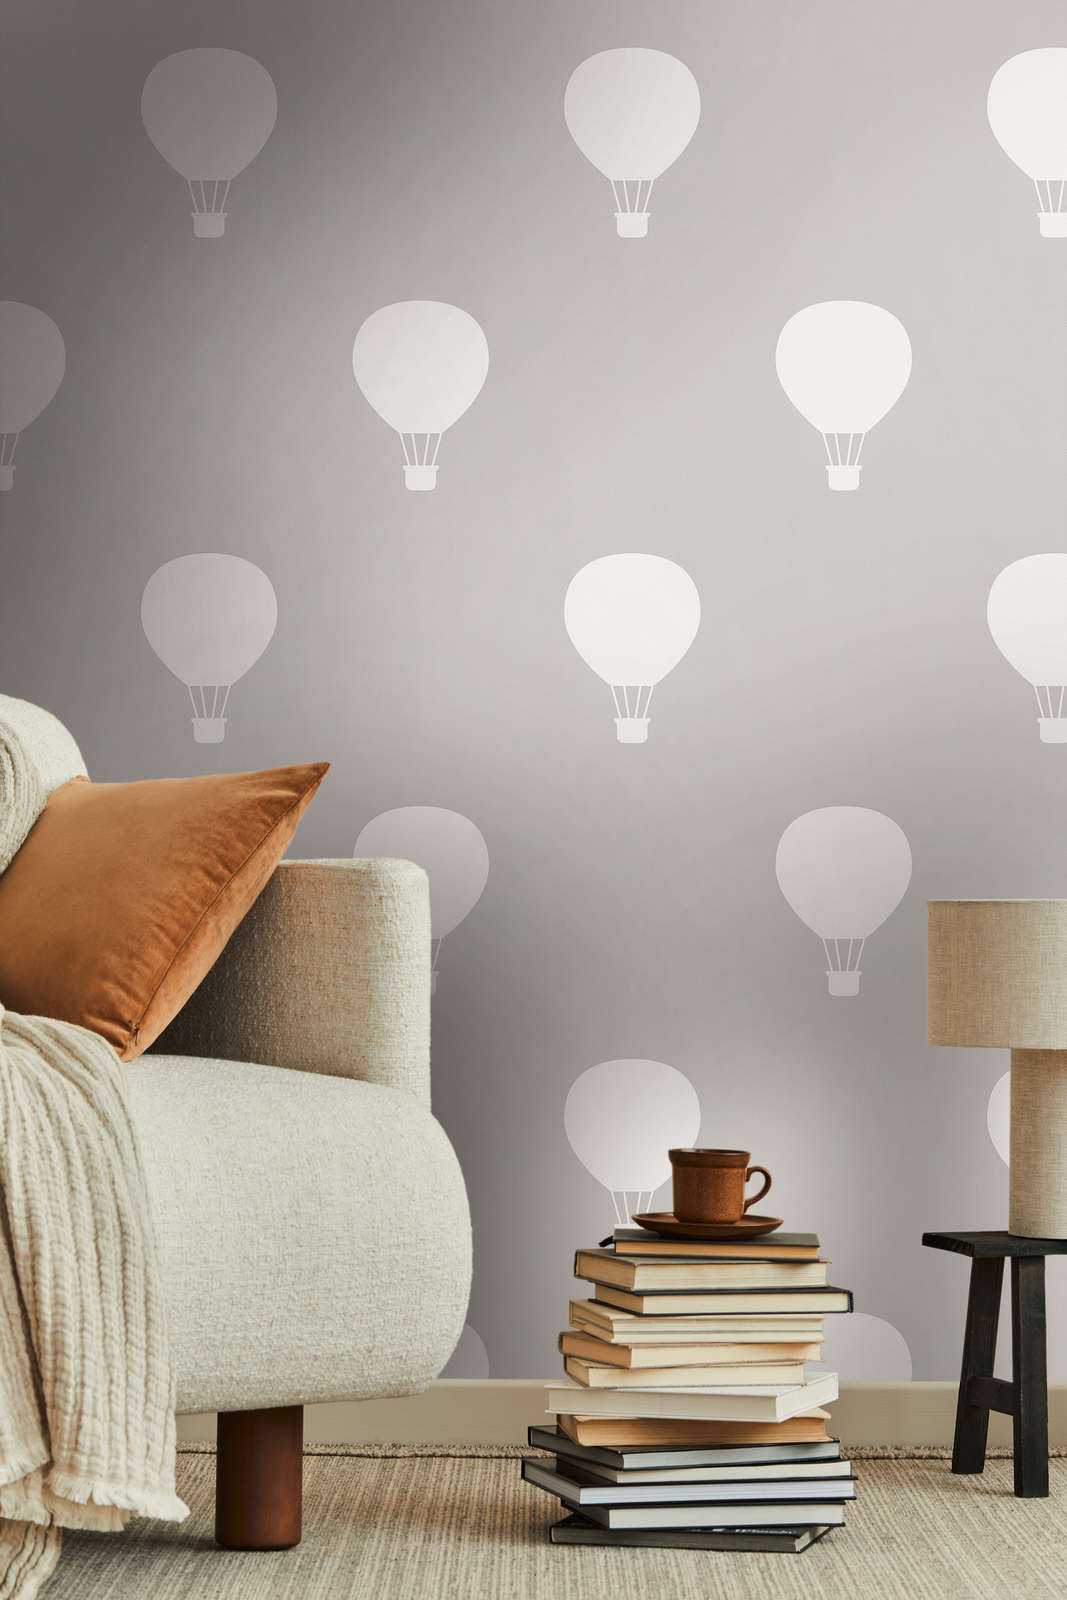             Non-woven wallpaper with hot balloons for Nursery - grey, cream
        